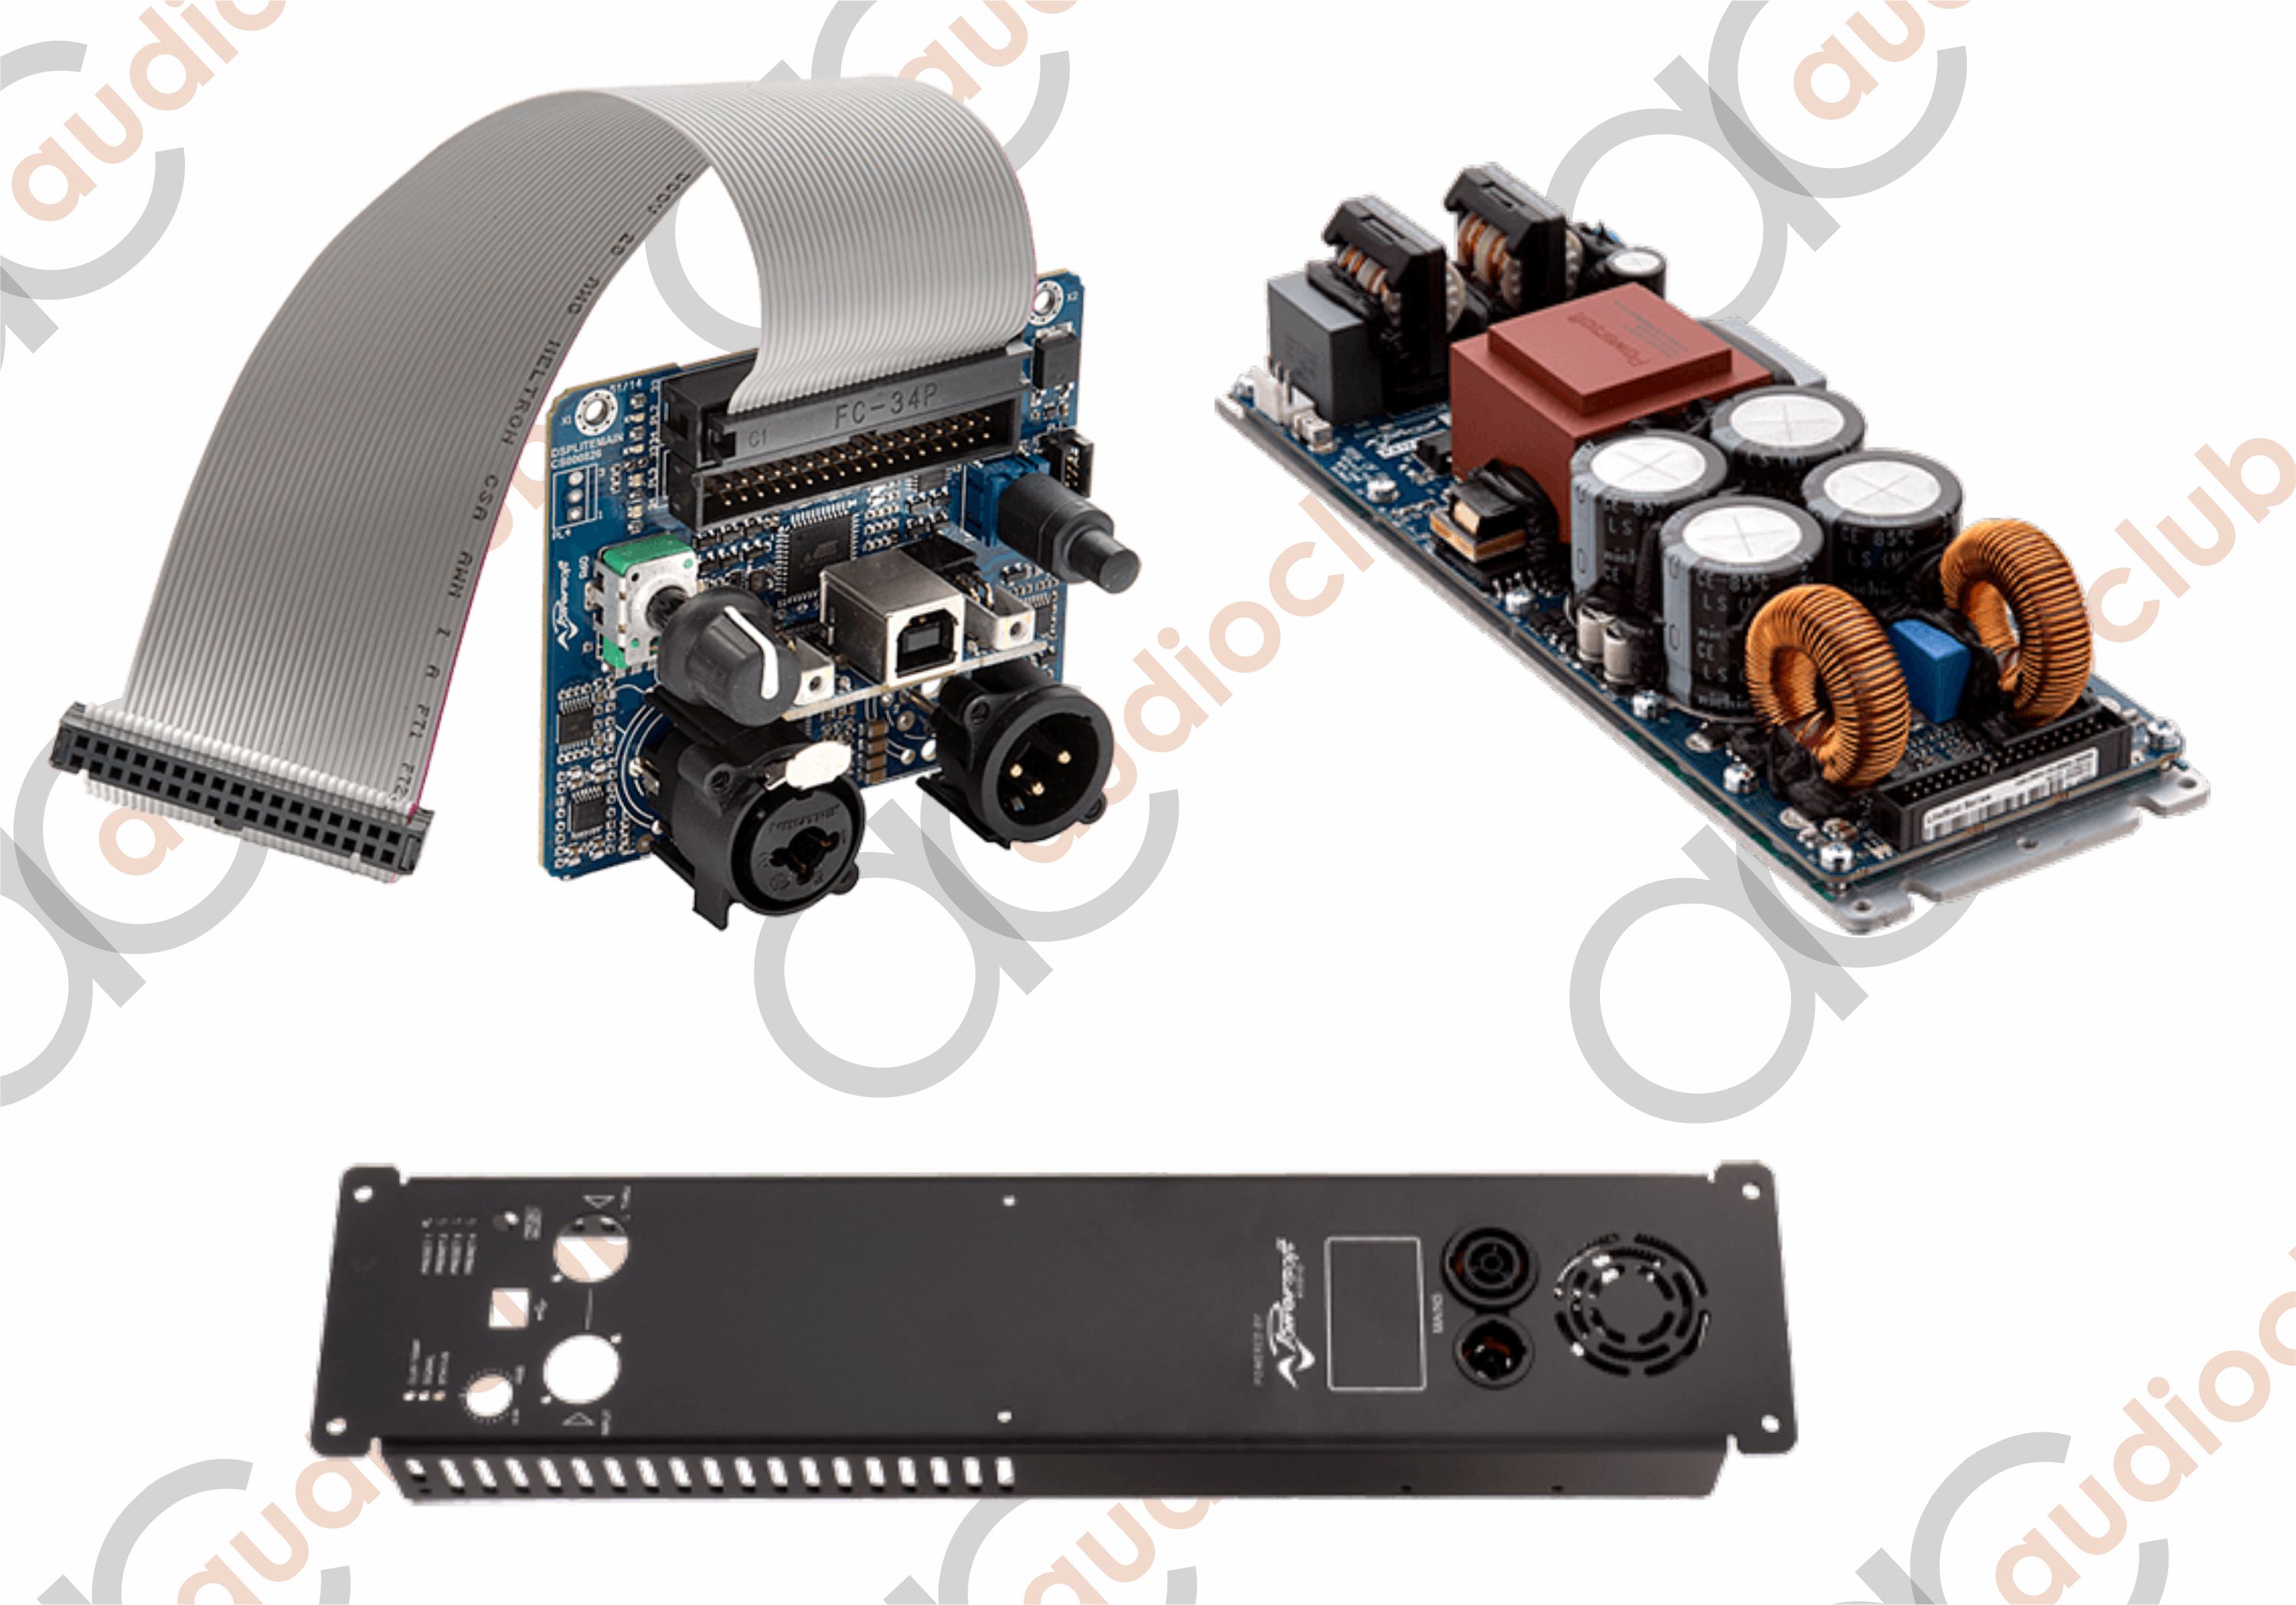 Kituri amplificare pro - Kit de amplificare Powersoft: modul LiteMod + radiator Small + placa DSP-Lite + cablu de alimentare + cablu de iesire, audioclub.ro